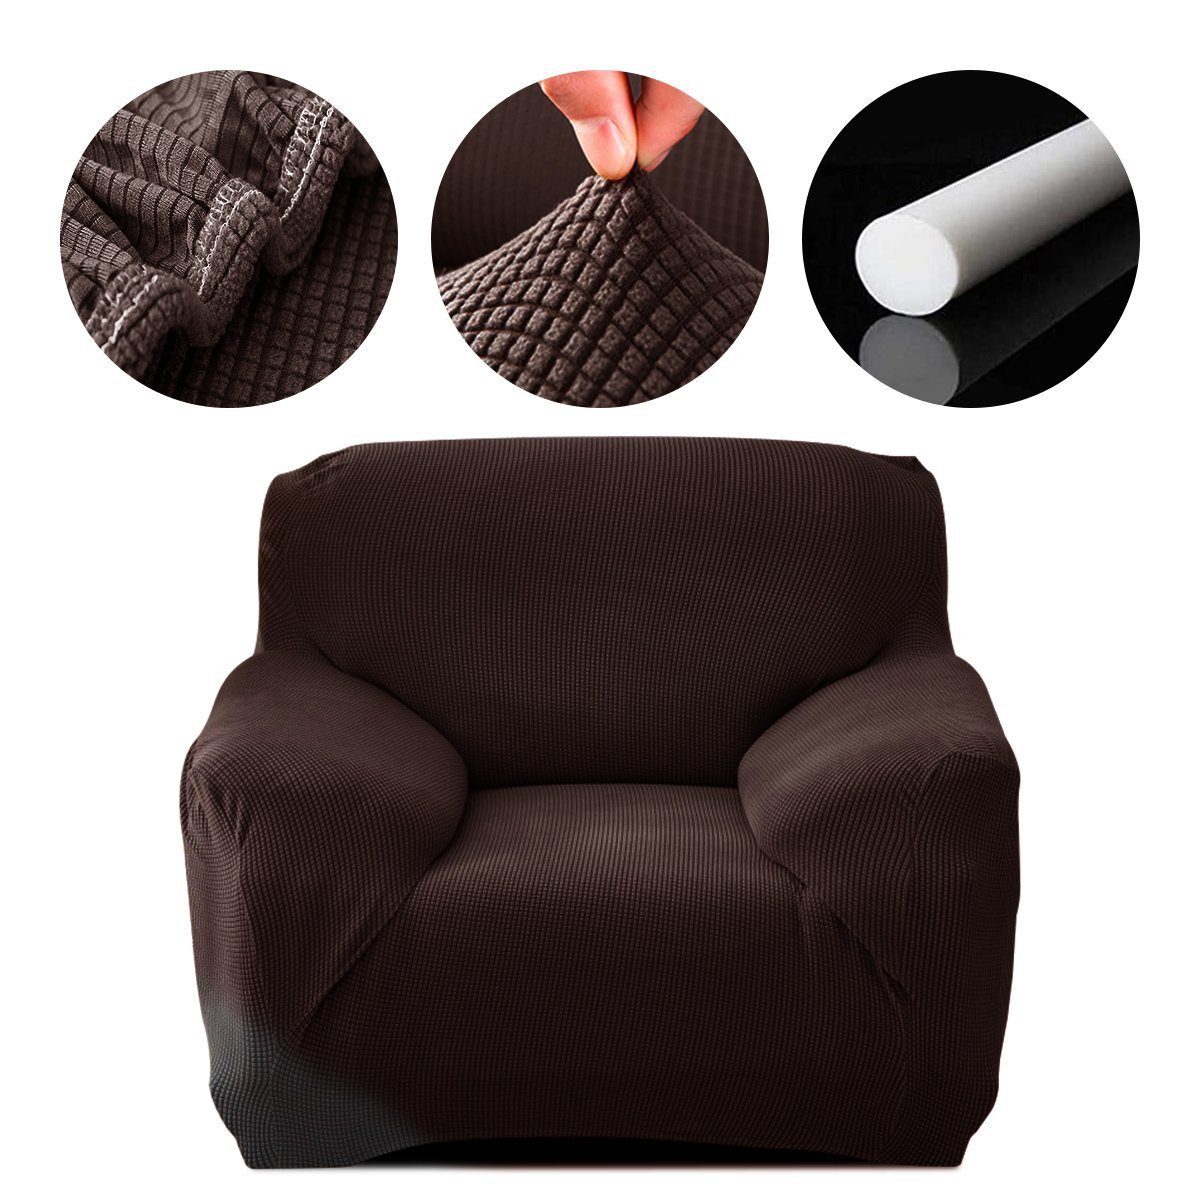 Sofahusse Sofahusse Stretch Sofa Abdeckung mit Elastische, MULISOFT, Sofabezug 1/2/3/4 Sitzer Stretch Schonbezug Couchbezug